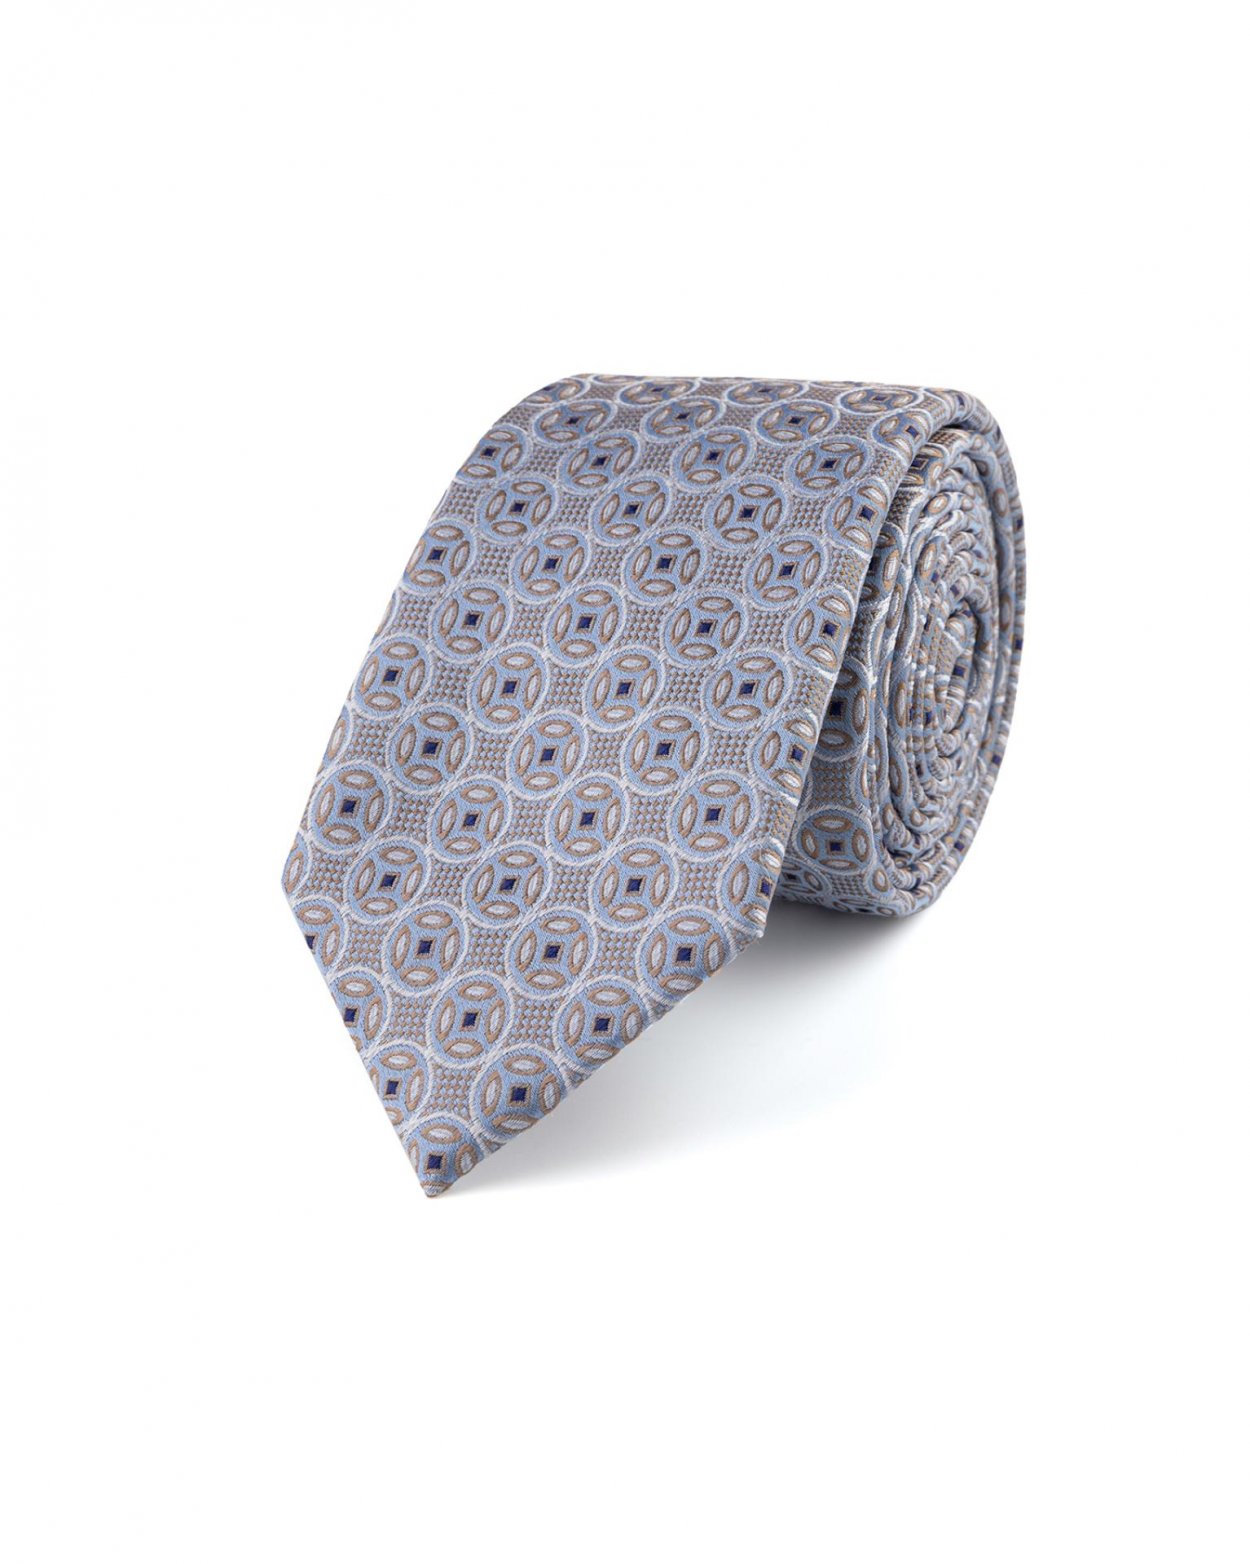 Béžová hedvábná kravata s geometrickým vzorem